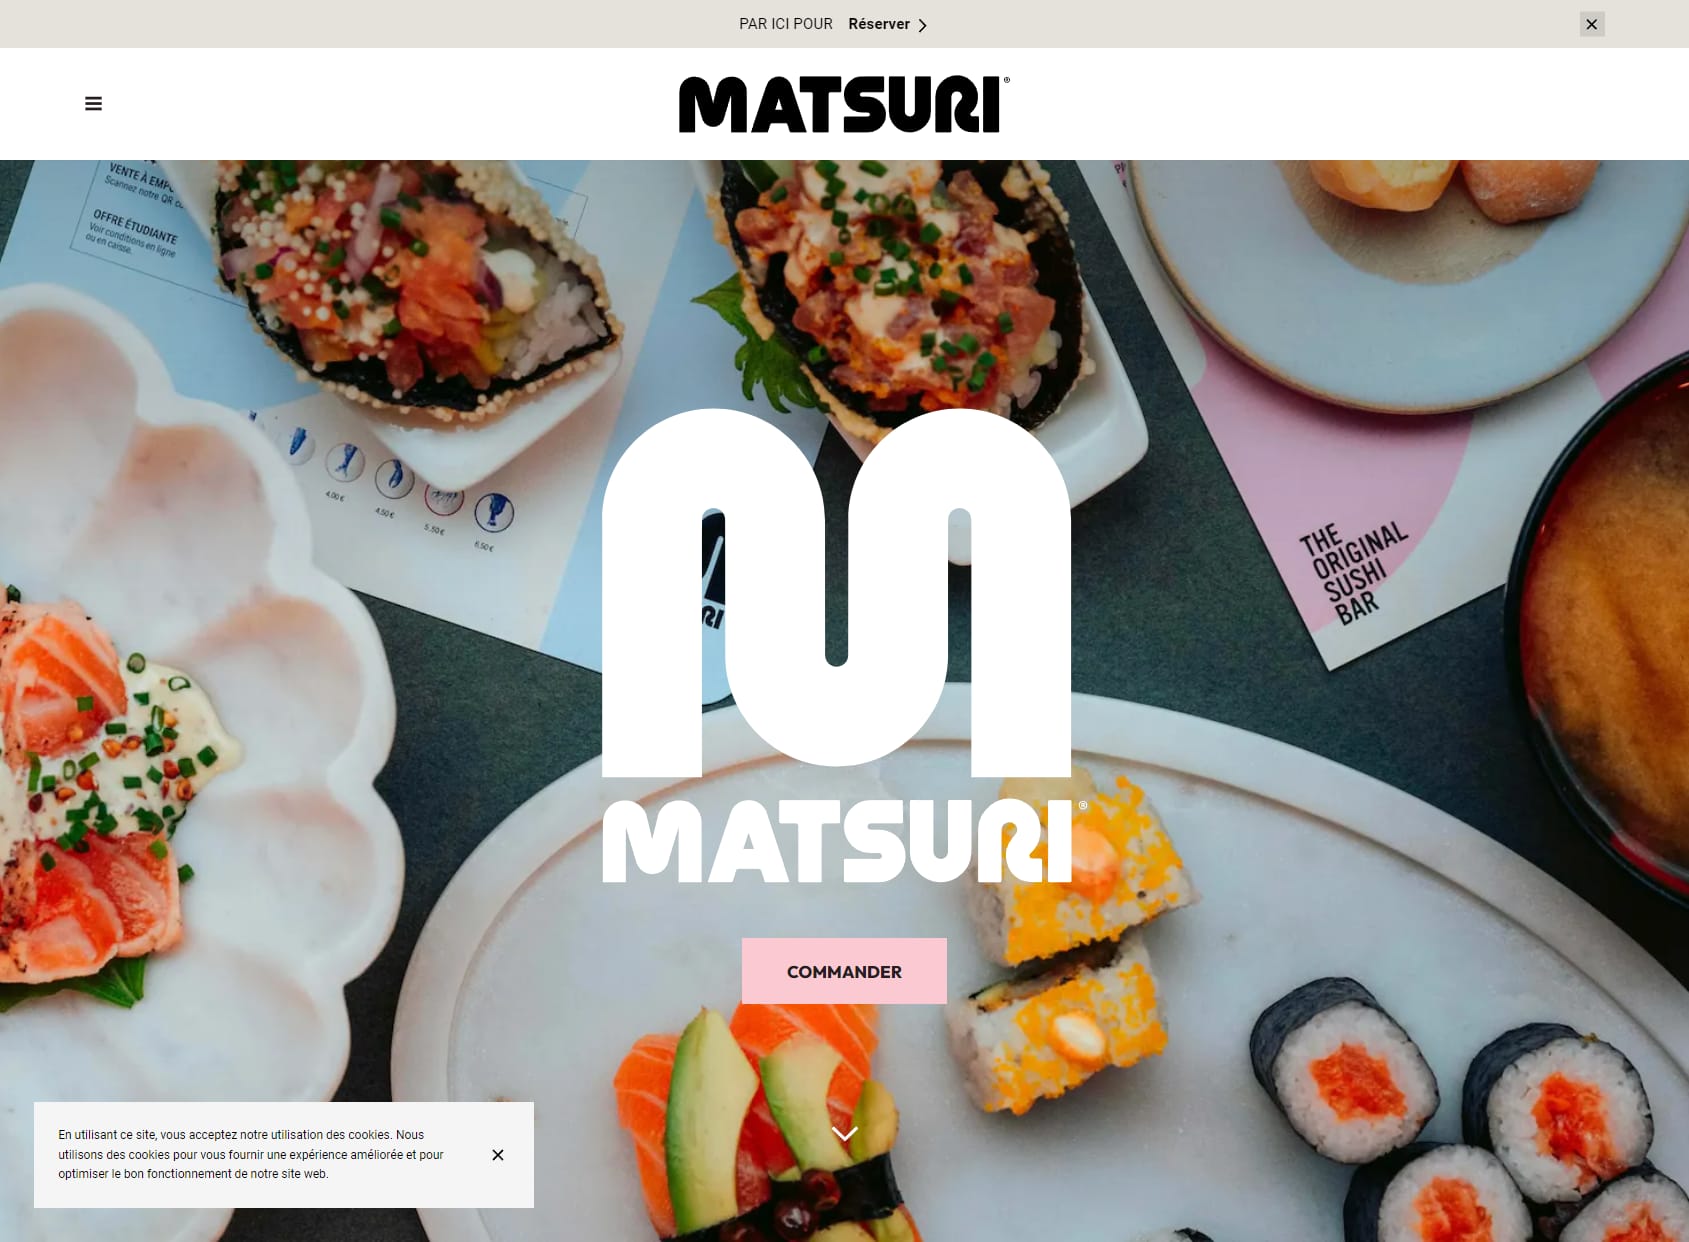 Matsuri Mérignac - The Original Sushi Bar